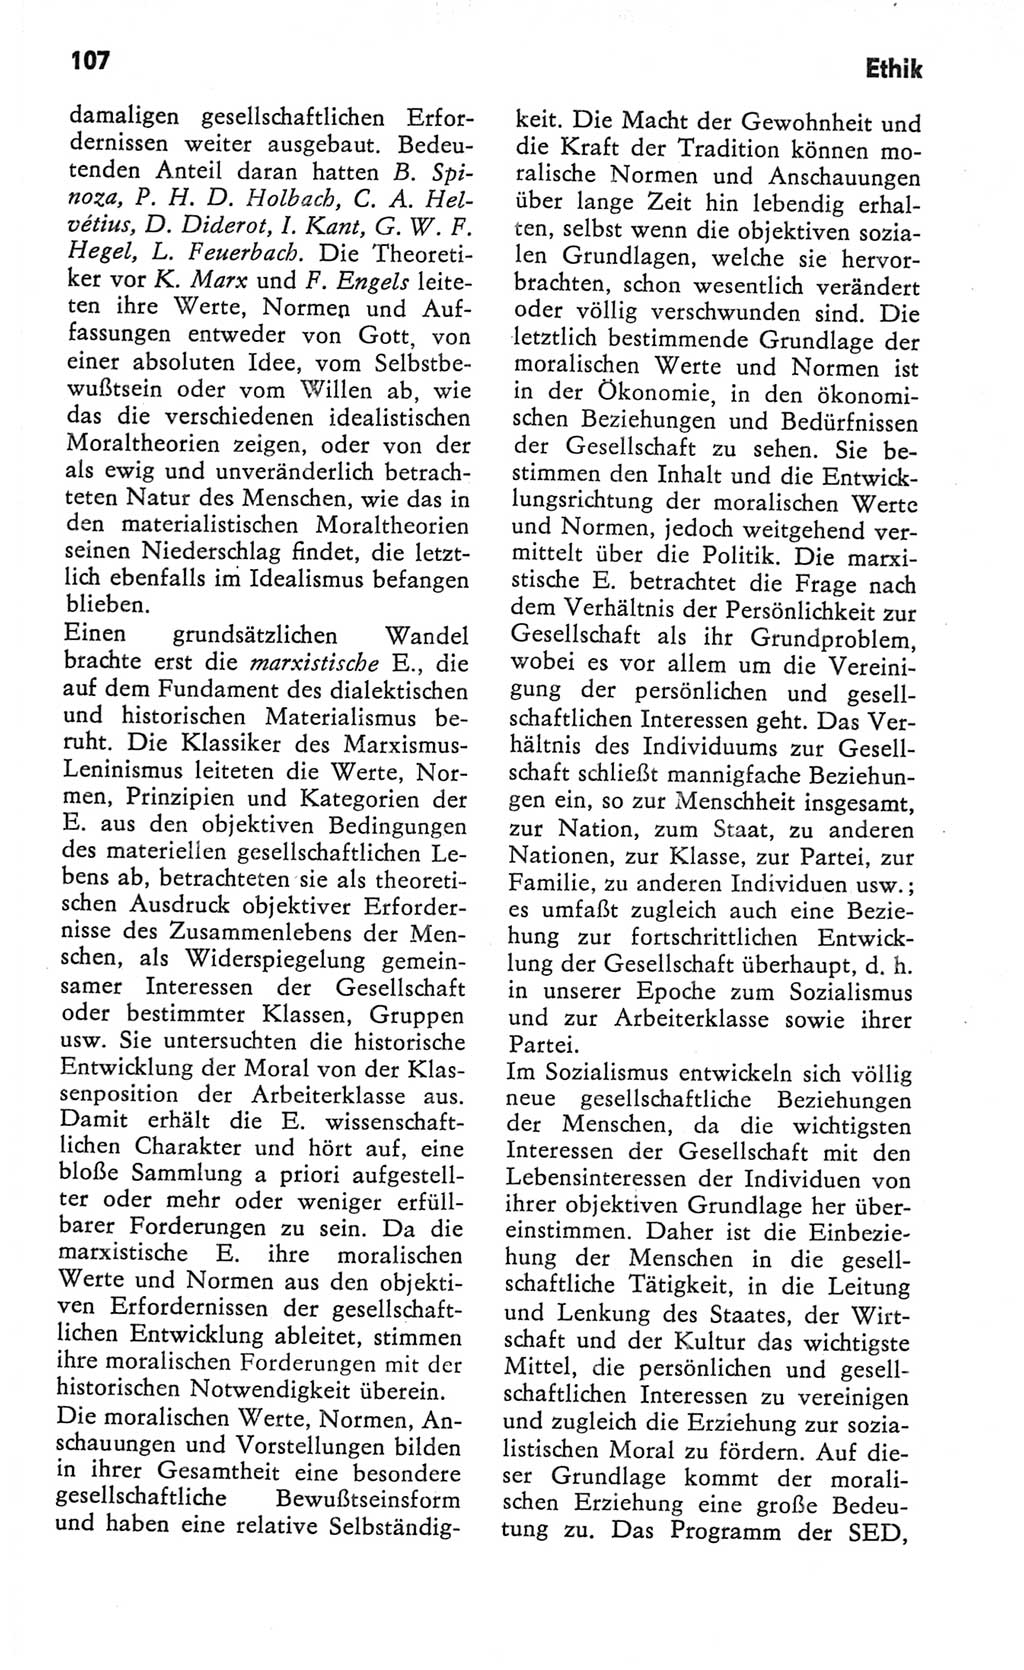 Kleines Wörterbuch der marxistisch-leninistischen Philosophie [Deutsche Demokratische Republik (DDR)] 1982, Seite 107 (Kl. Wb. ML Phil. DDR 1982, S. 107)